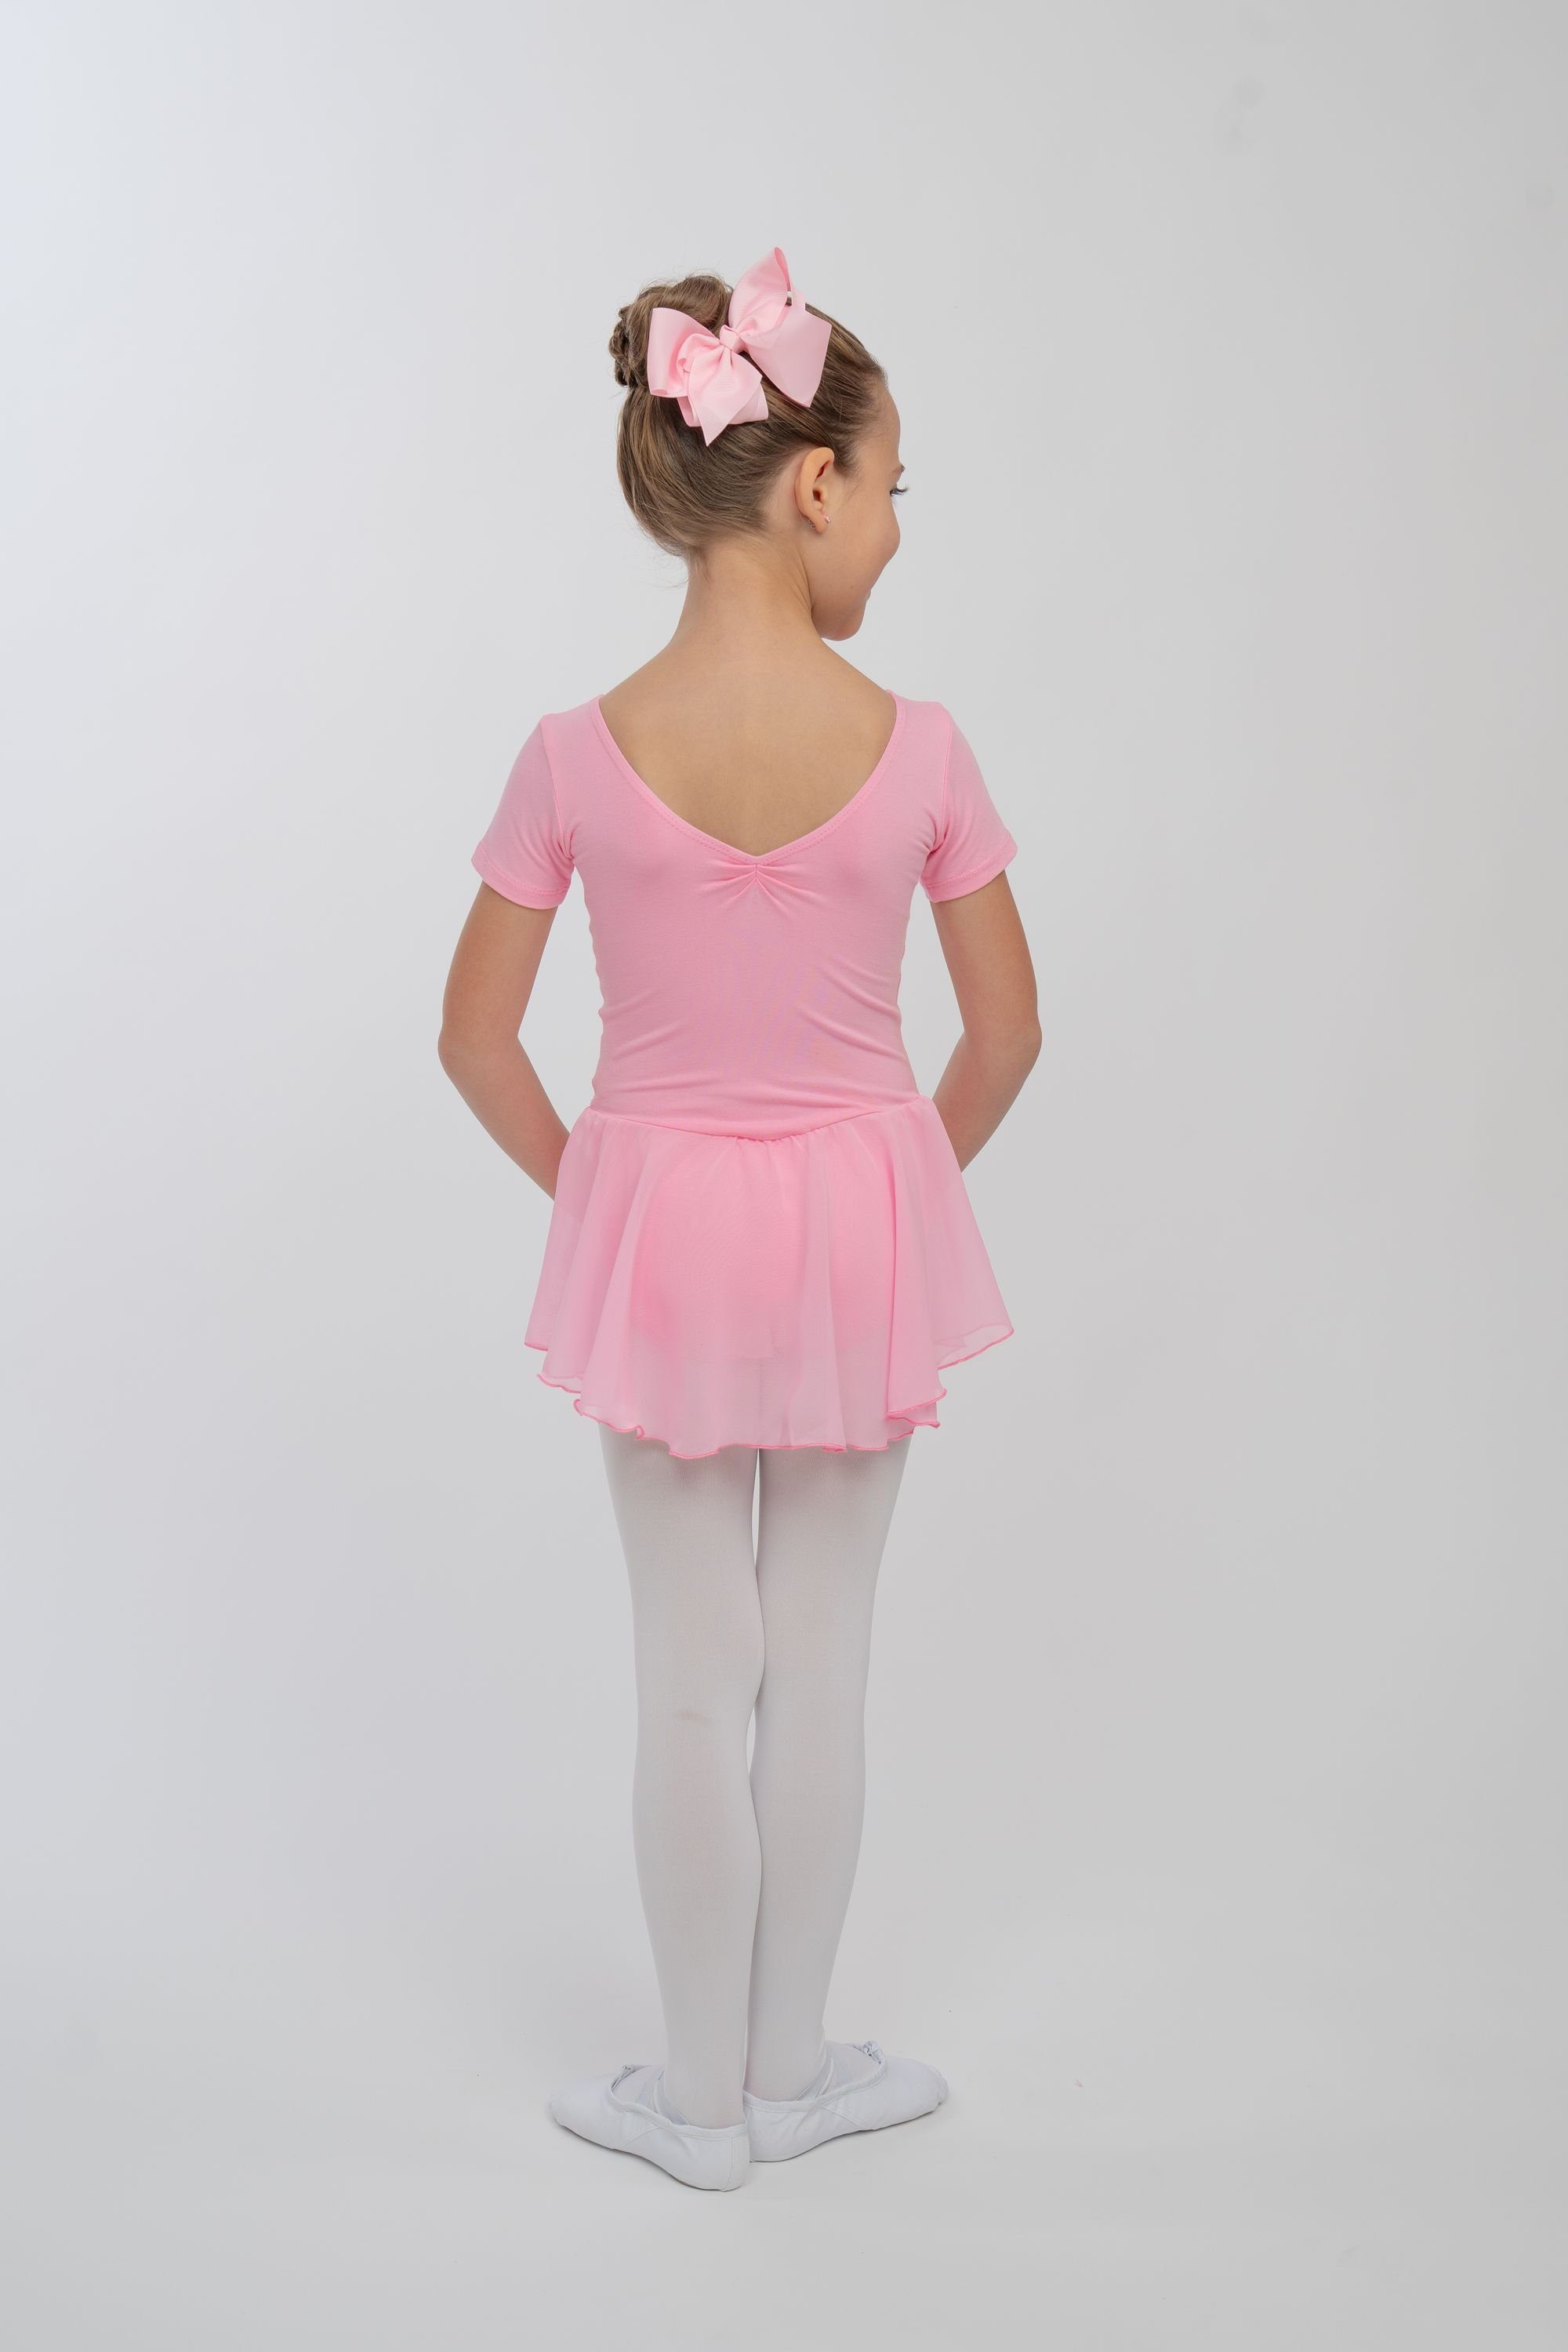 Betty Chiffon mit rosa Mädchen Glitzersteinen Chiffonkleid tanzmuster Ballettkleid Ballettbody mit Röckchen